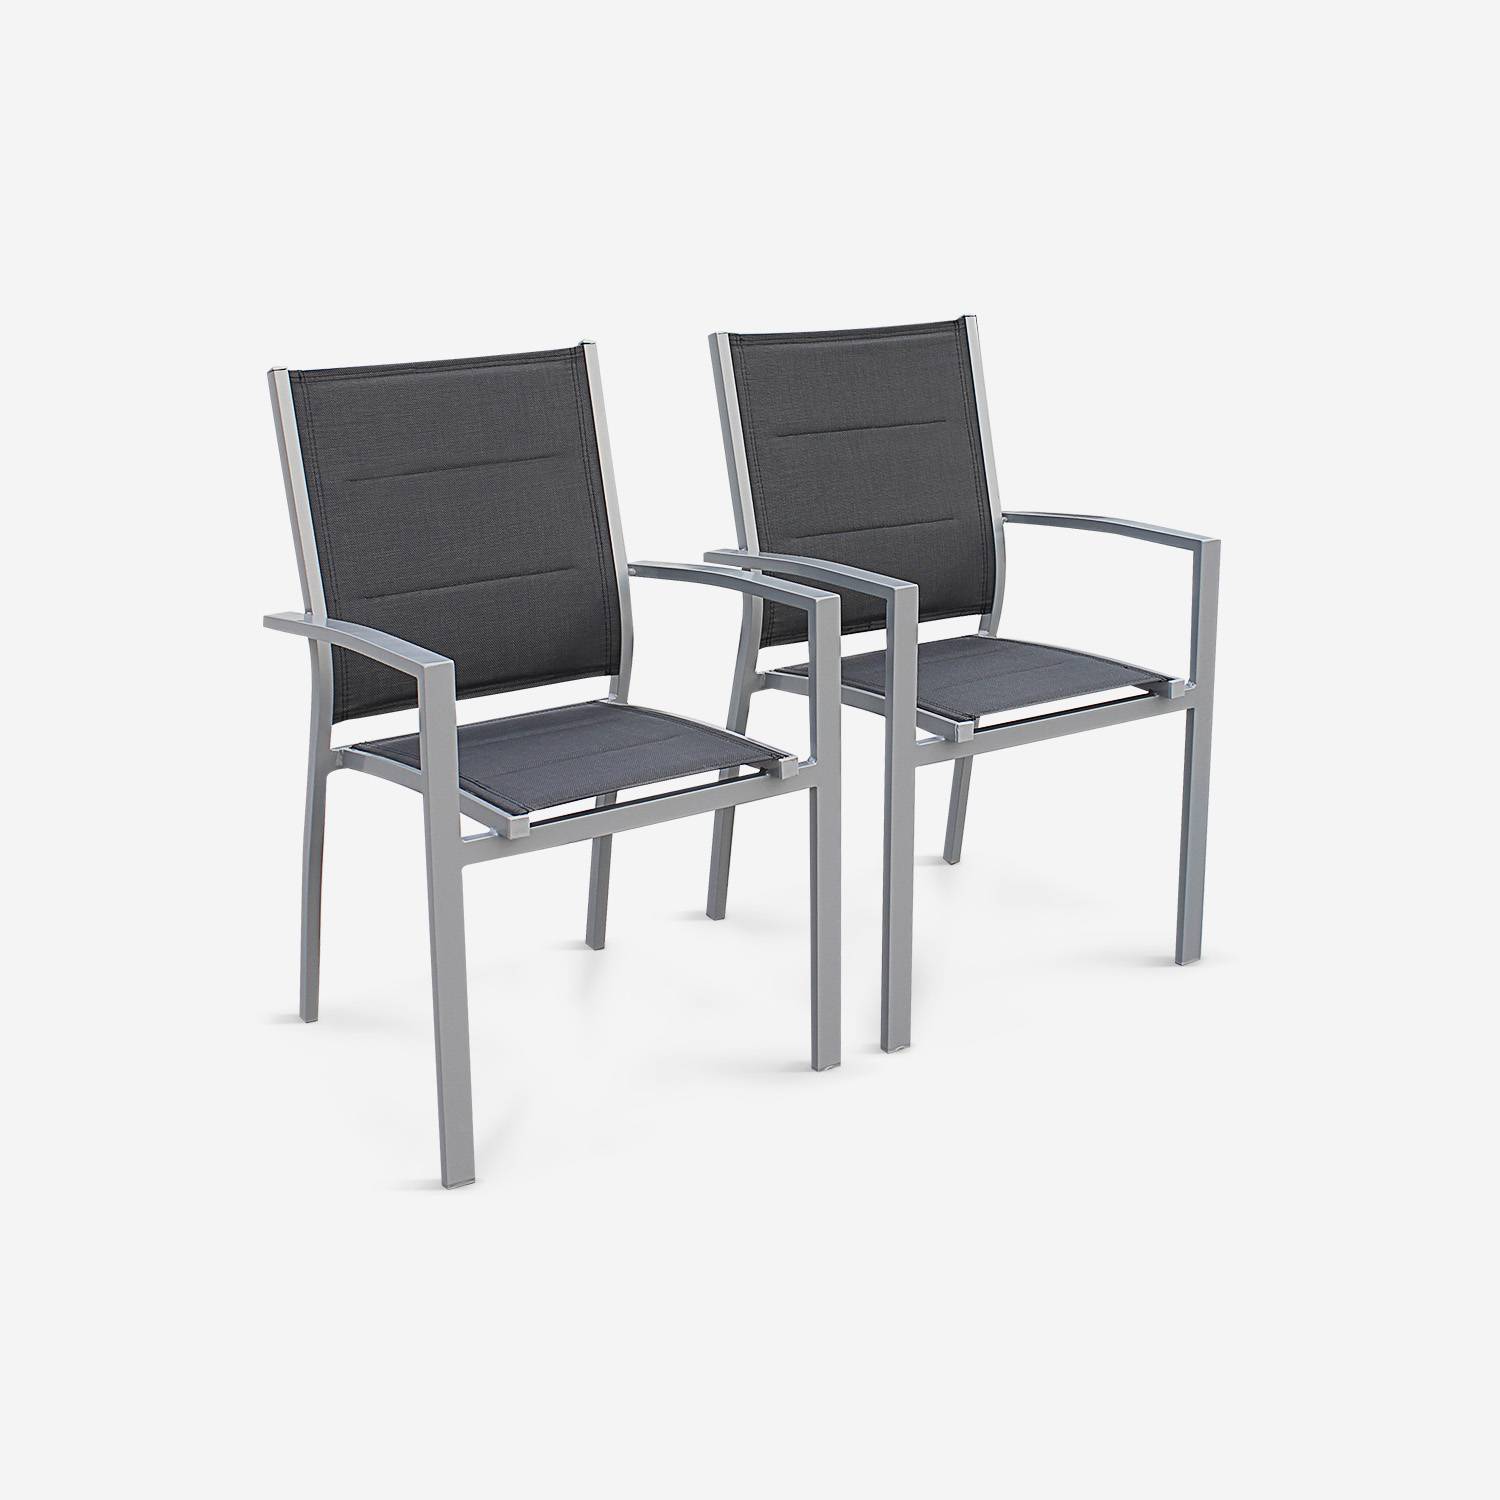 Lot de 2 fauteuils - Chicago / Odenton  - En aluminium gris et textilène gris foncé, empilables Photo1